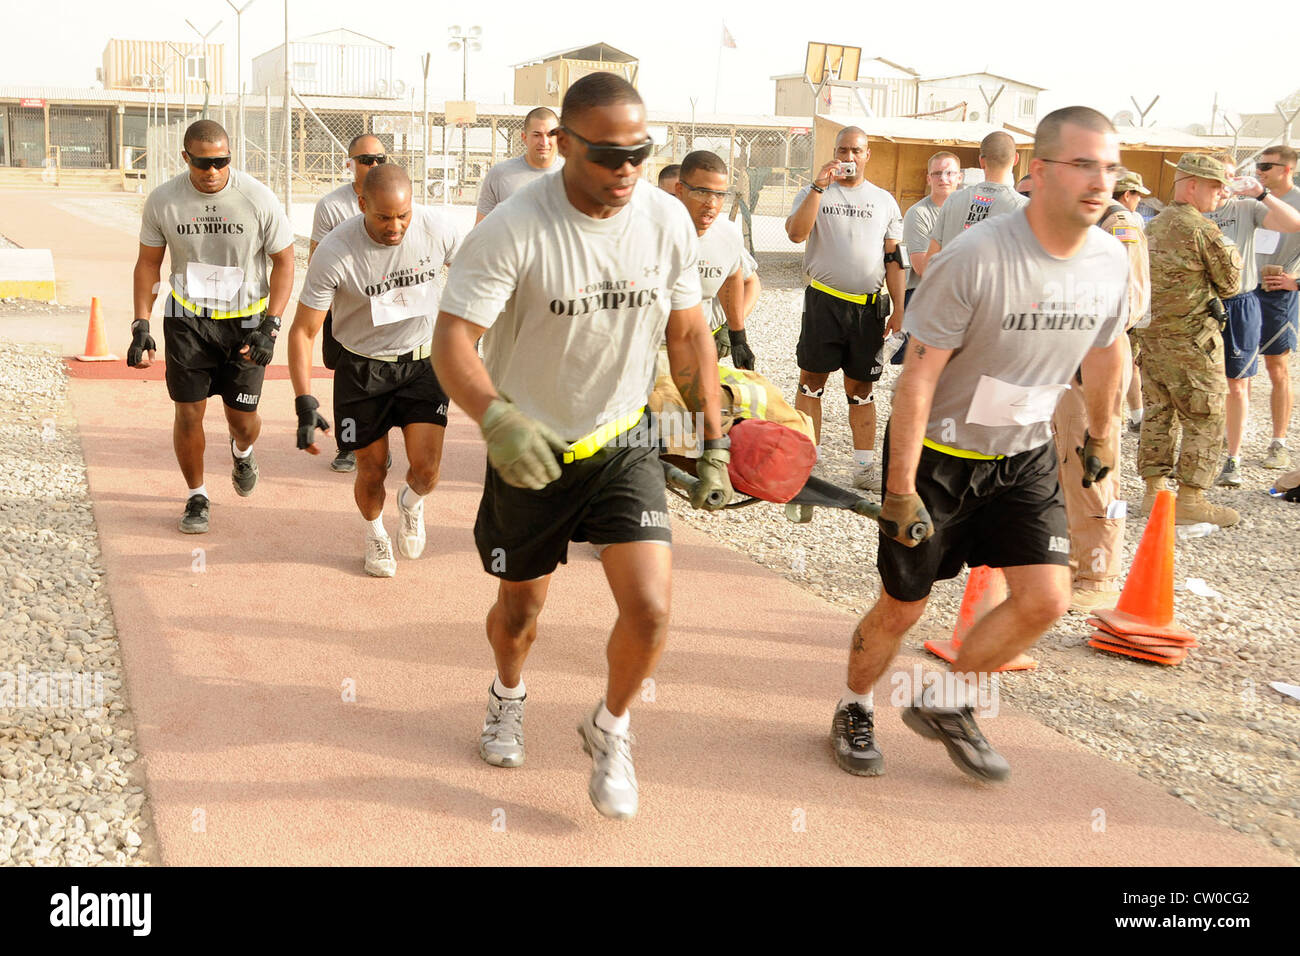 Soldaten der US-Armee laufen während des Mülls tragen Teil der Kampfolympiade auf dem Kandahar Airfield, Afghanistan am 3. August 2012. Die Teams mussten auf der Promenade um die Strecke laufen und während des Laufs mit ihren Teamkollegen abschalten, während sie einen gewichteten Dummy trugen. Sieben Teams nahmen an den Olympischen Spielen Teil, darunter sechs anstrengende Events, darunter ein 5k-Lauf, Reifenflip, Liegestütze, Humvee-Push, Wurftrage und Tauziehen. Die Veranstaltung wurde vom Focus 5/6 Leadership Council on KAF gesponsert und die Einnahmen wurden zwischen dem rat und der Wounded Warrior Foundation aufgeteilt Stockfoto